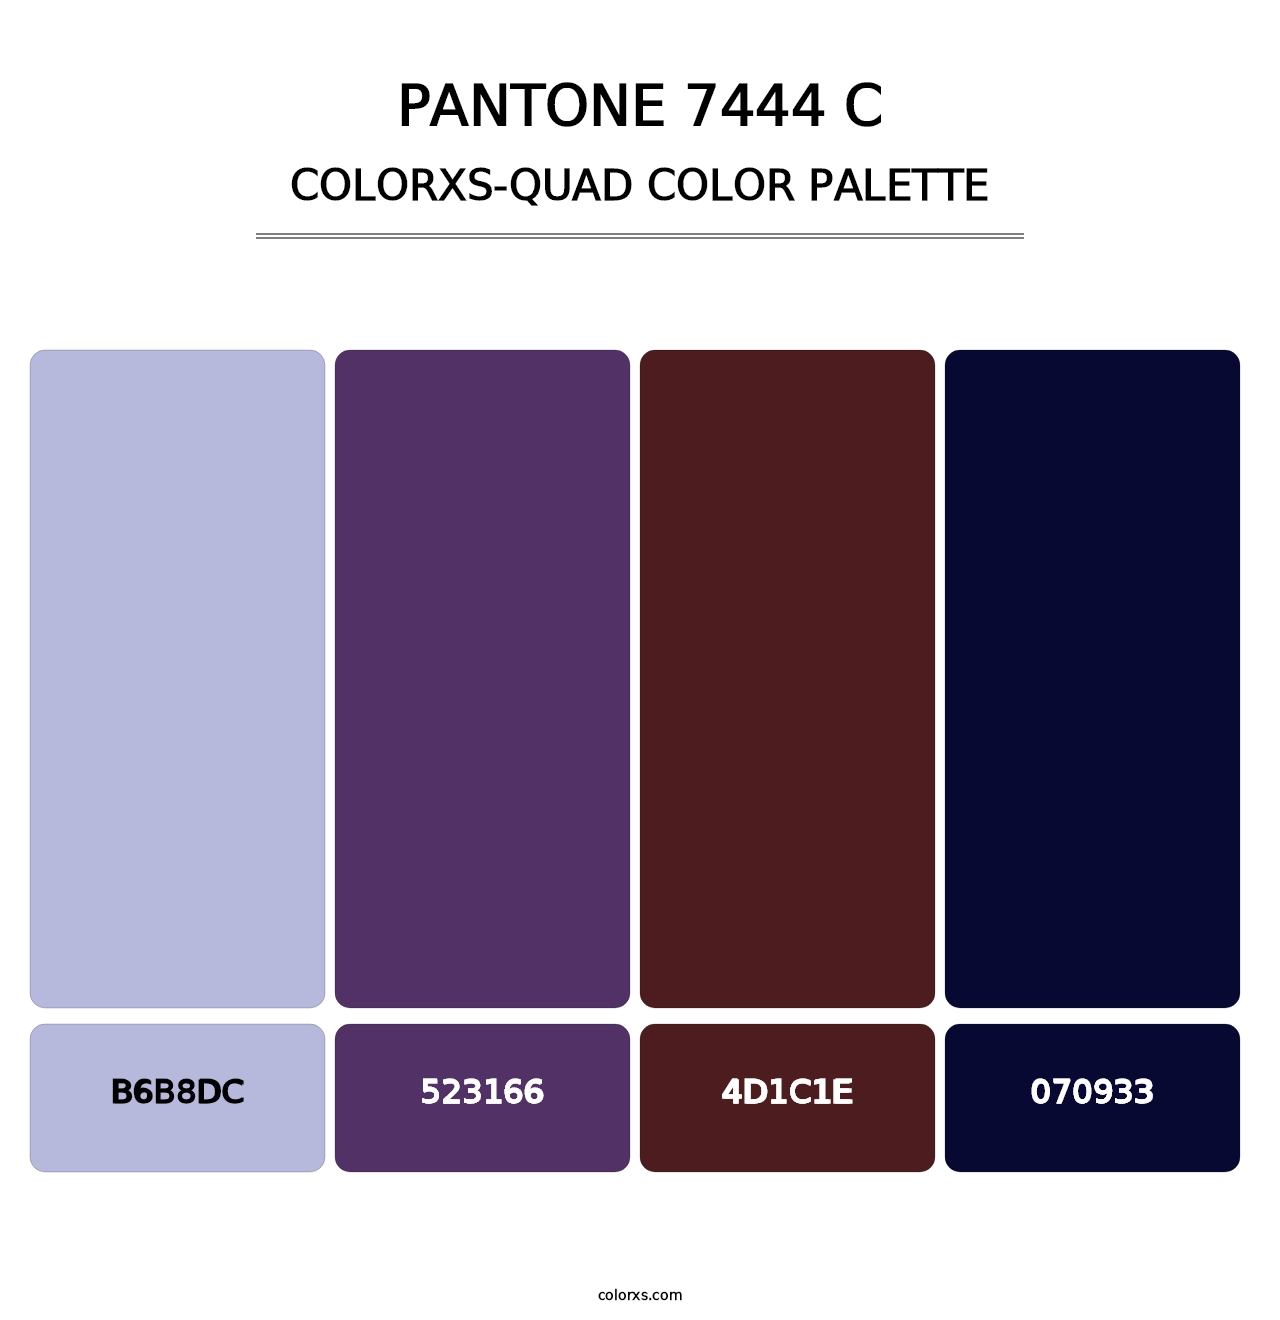 PANTONE 7444 C - Colorxs Quad Palette